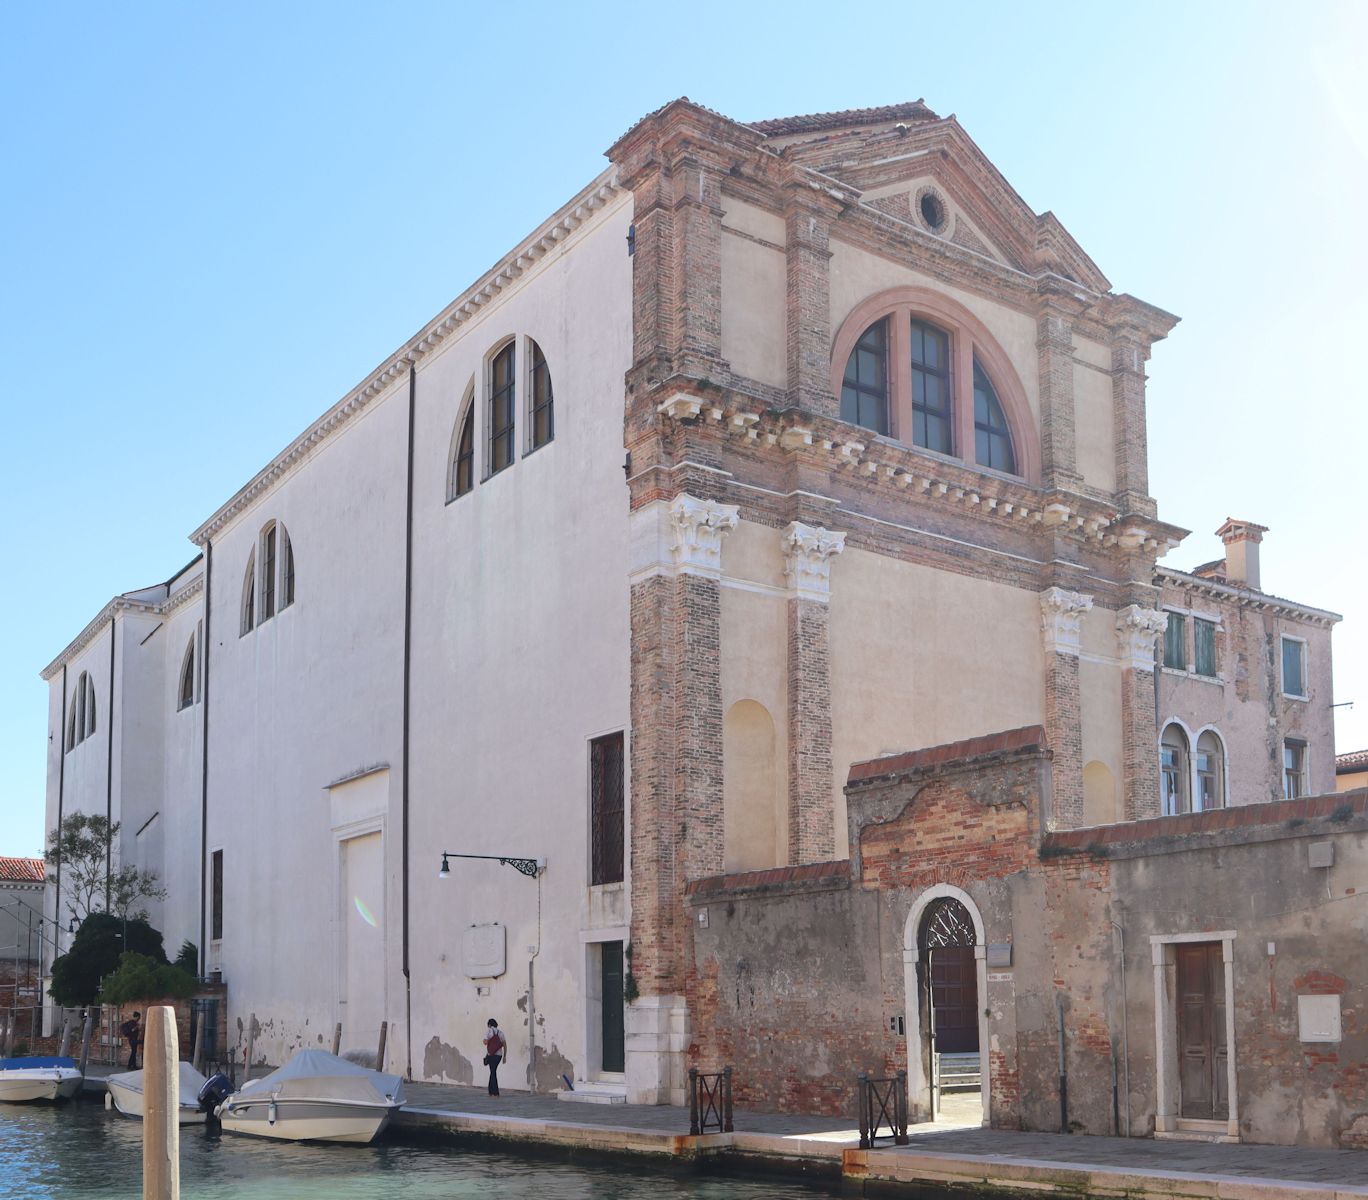 Kirche San Girolamo in Venedig, 1810 in eine Zuckerfabrik umgewandelt, seit 1952 wieder als Kirche genutzt